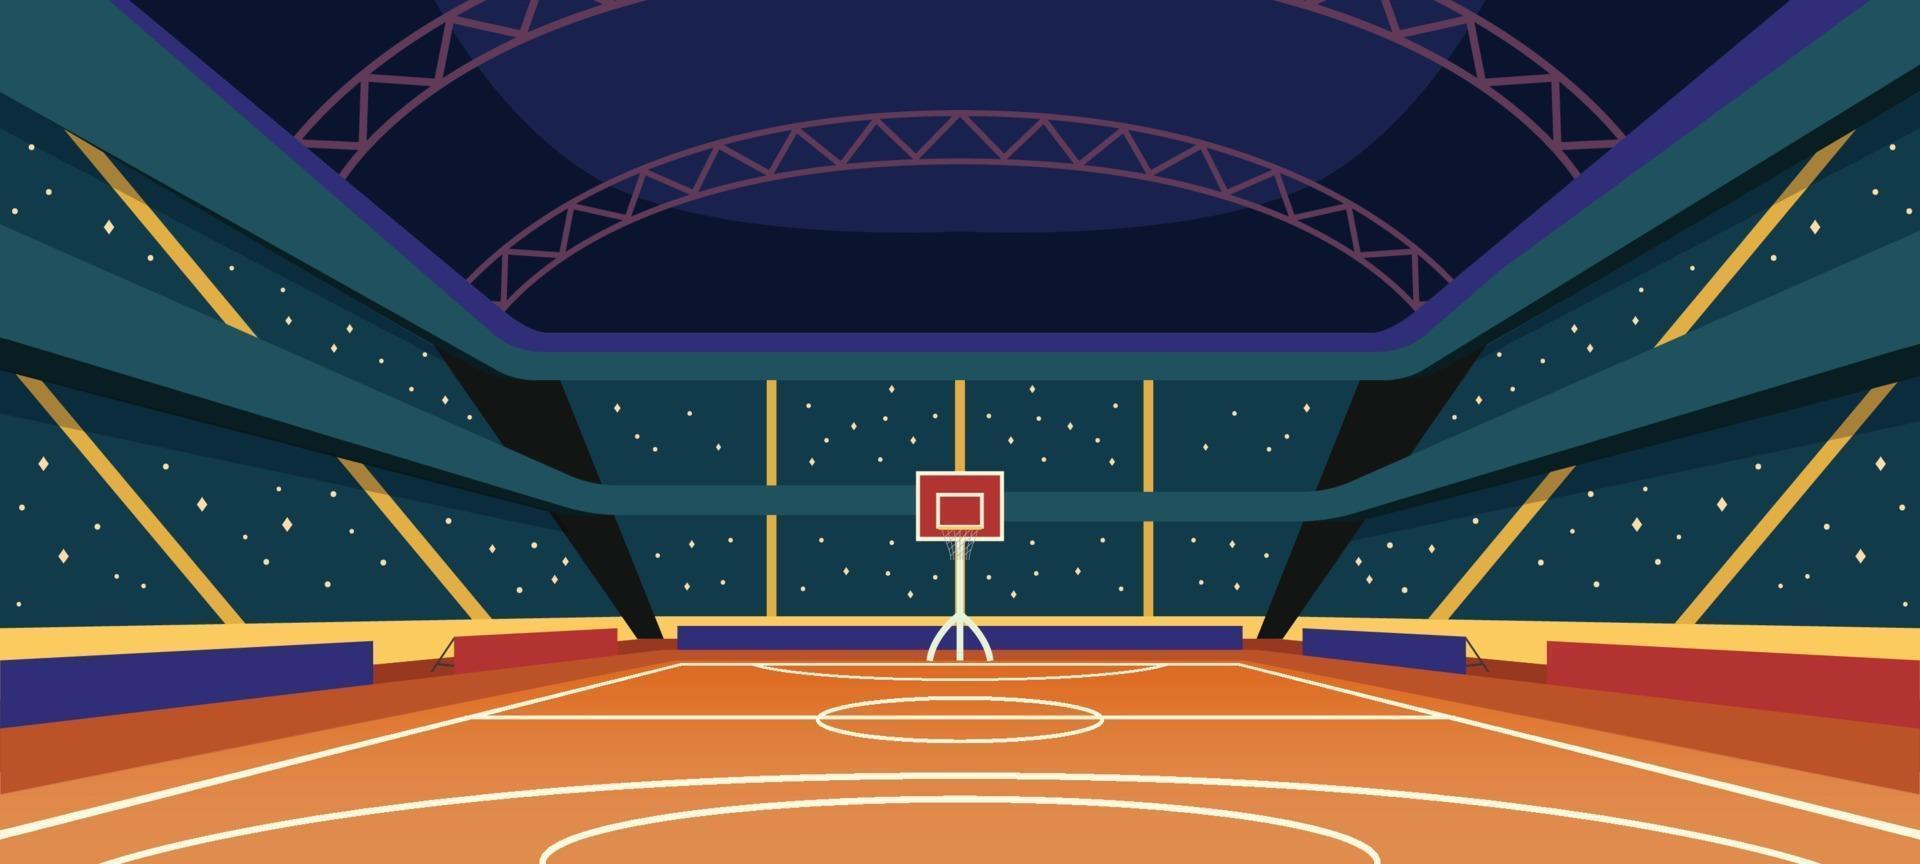 Hintergrund Stadion Basketball vektor